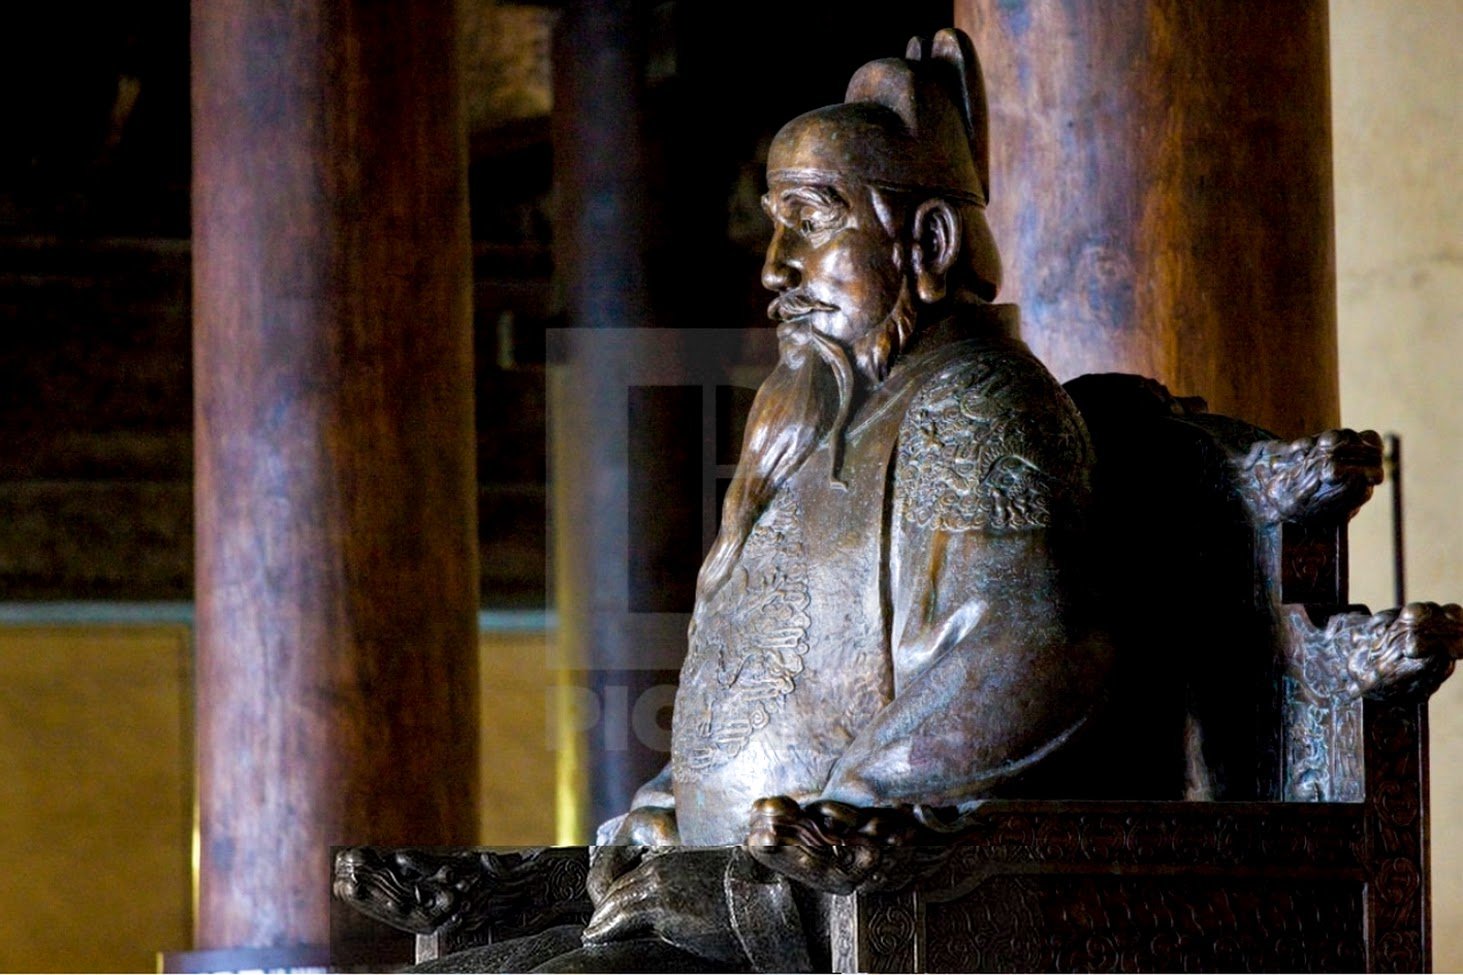 Statue de l'empereur Yongle au site des tombeaux Ming, Chang Ling Way, Pékin (Pékin), Chine